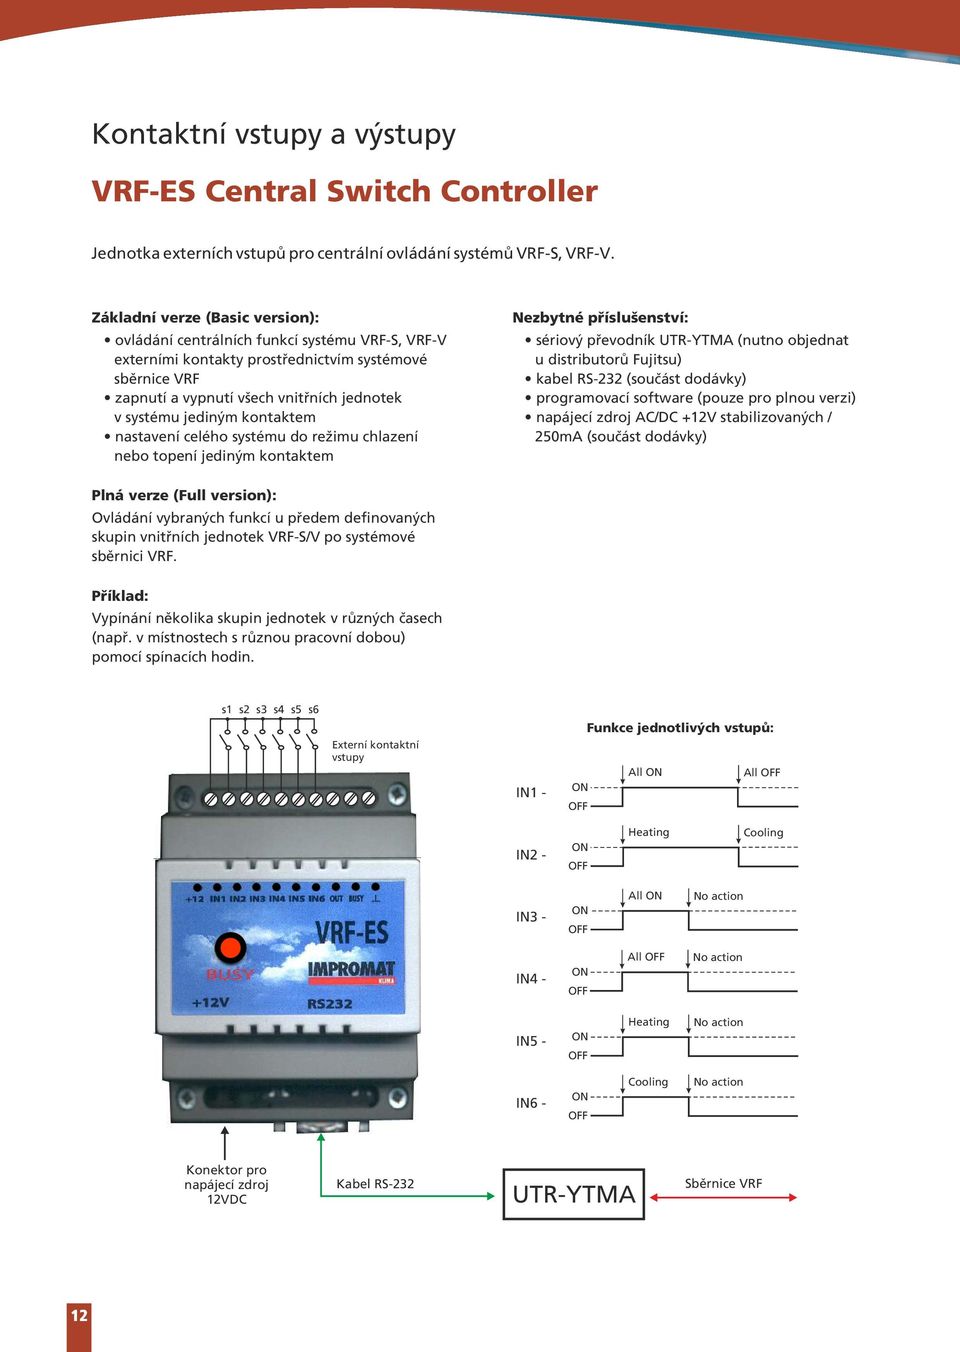 kontaktem nastavení celého systému do režimu chlazení nebo topení jediným kontaktem ezbytné příslušenství sériový převodník UTR-YTMA (nutno objednat u distributorů Fujitsu) kabel RS-232 (součást